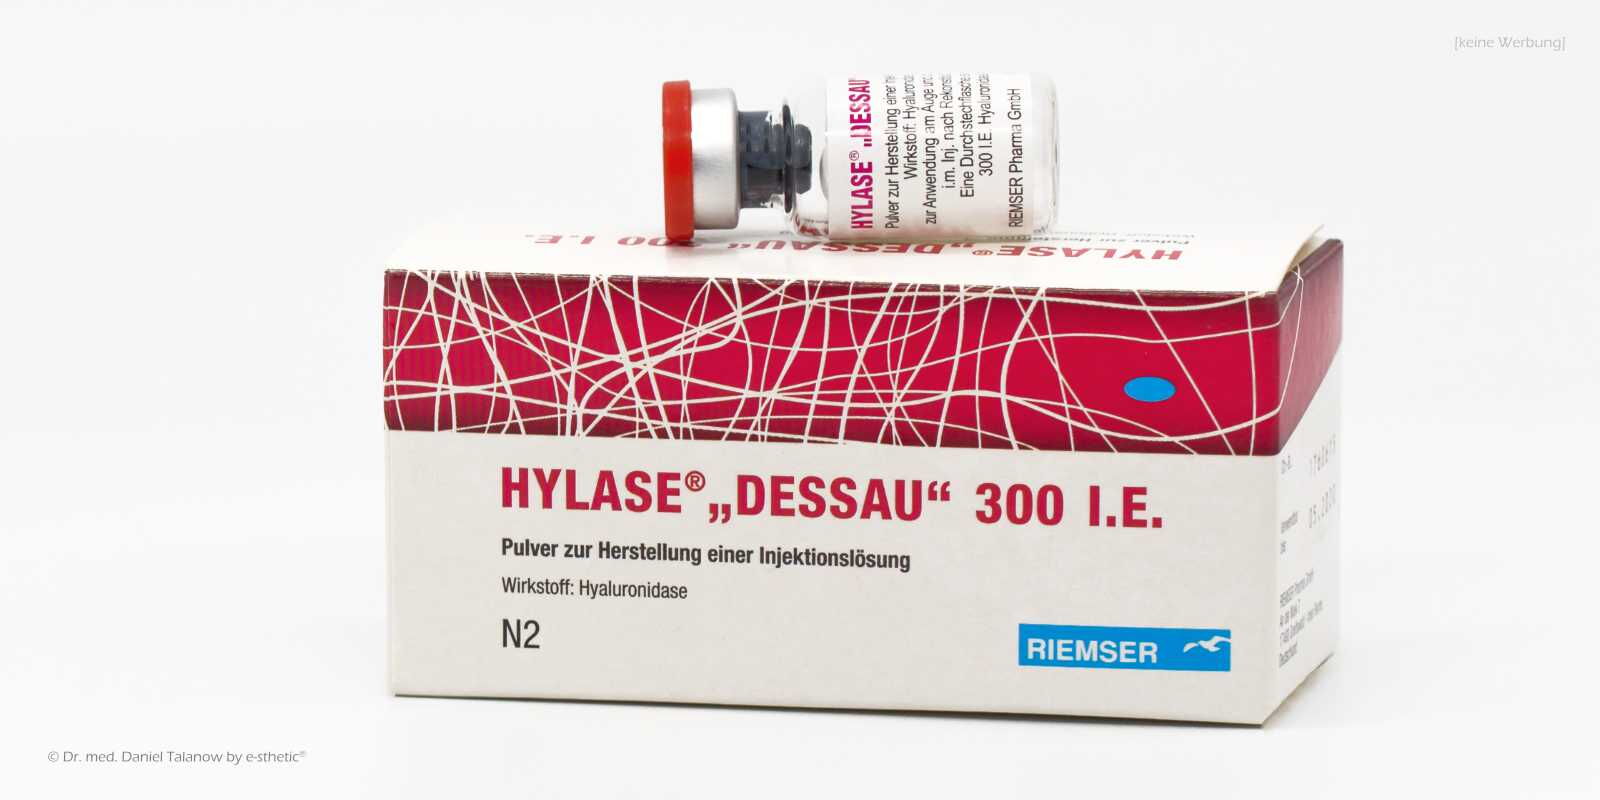 In der Medizin kann Hylase bei einer komplikationsbehafteten Behandlung mit Hyaluronsäure wie z.B. einer Thrombose oder Kompression von Gefäßen angewendet werden